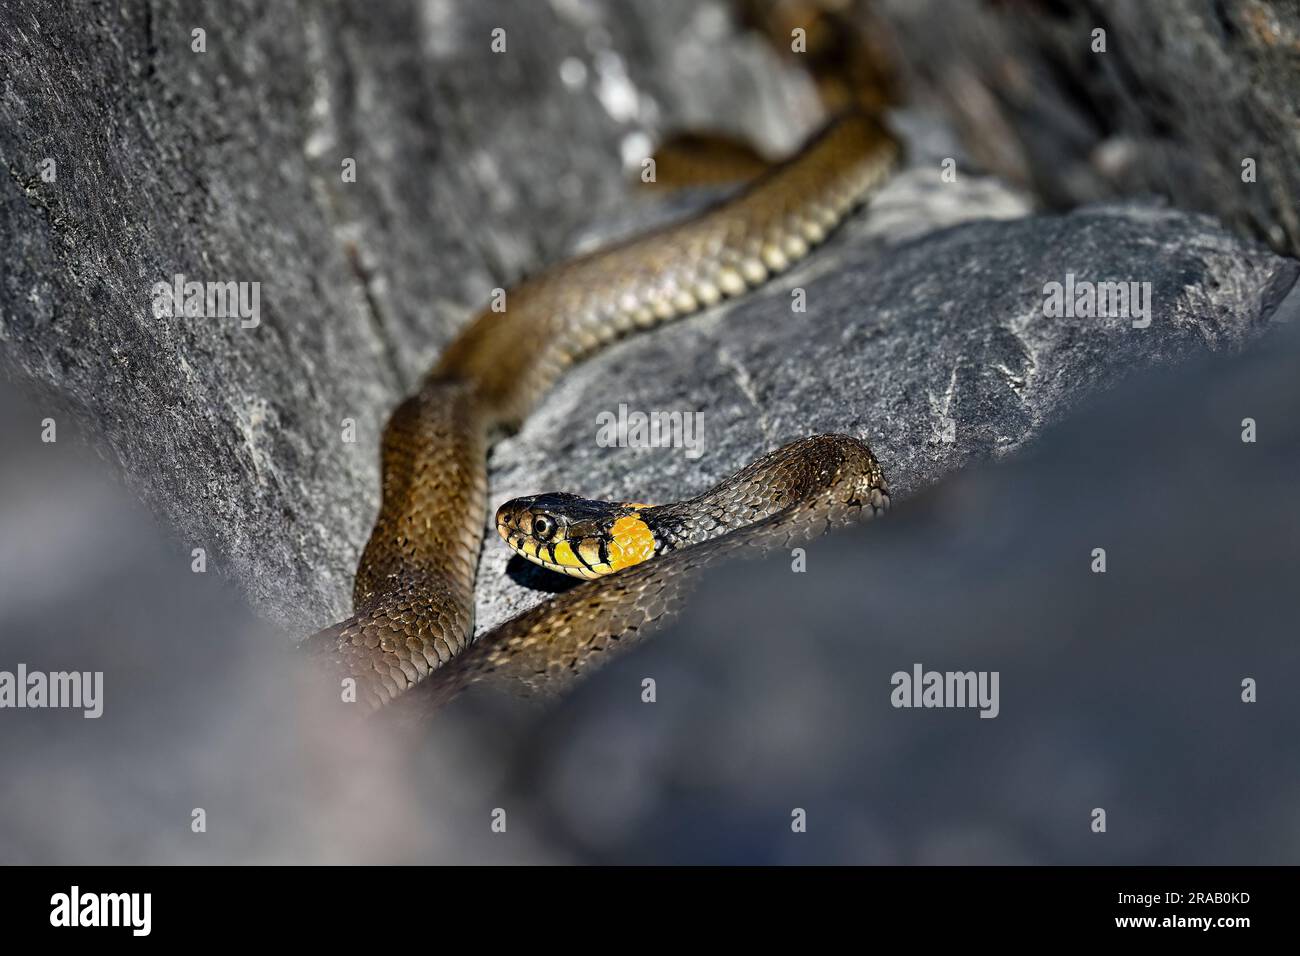 Serpent d'herbe se baquant dans les crevasses de roche Banque D'Images